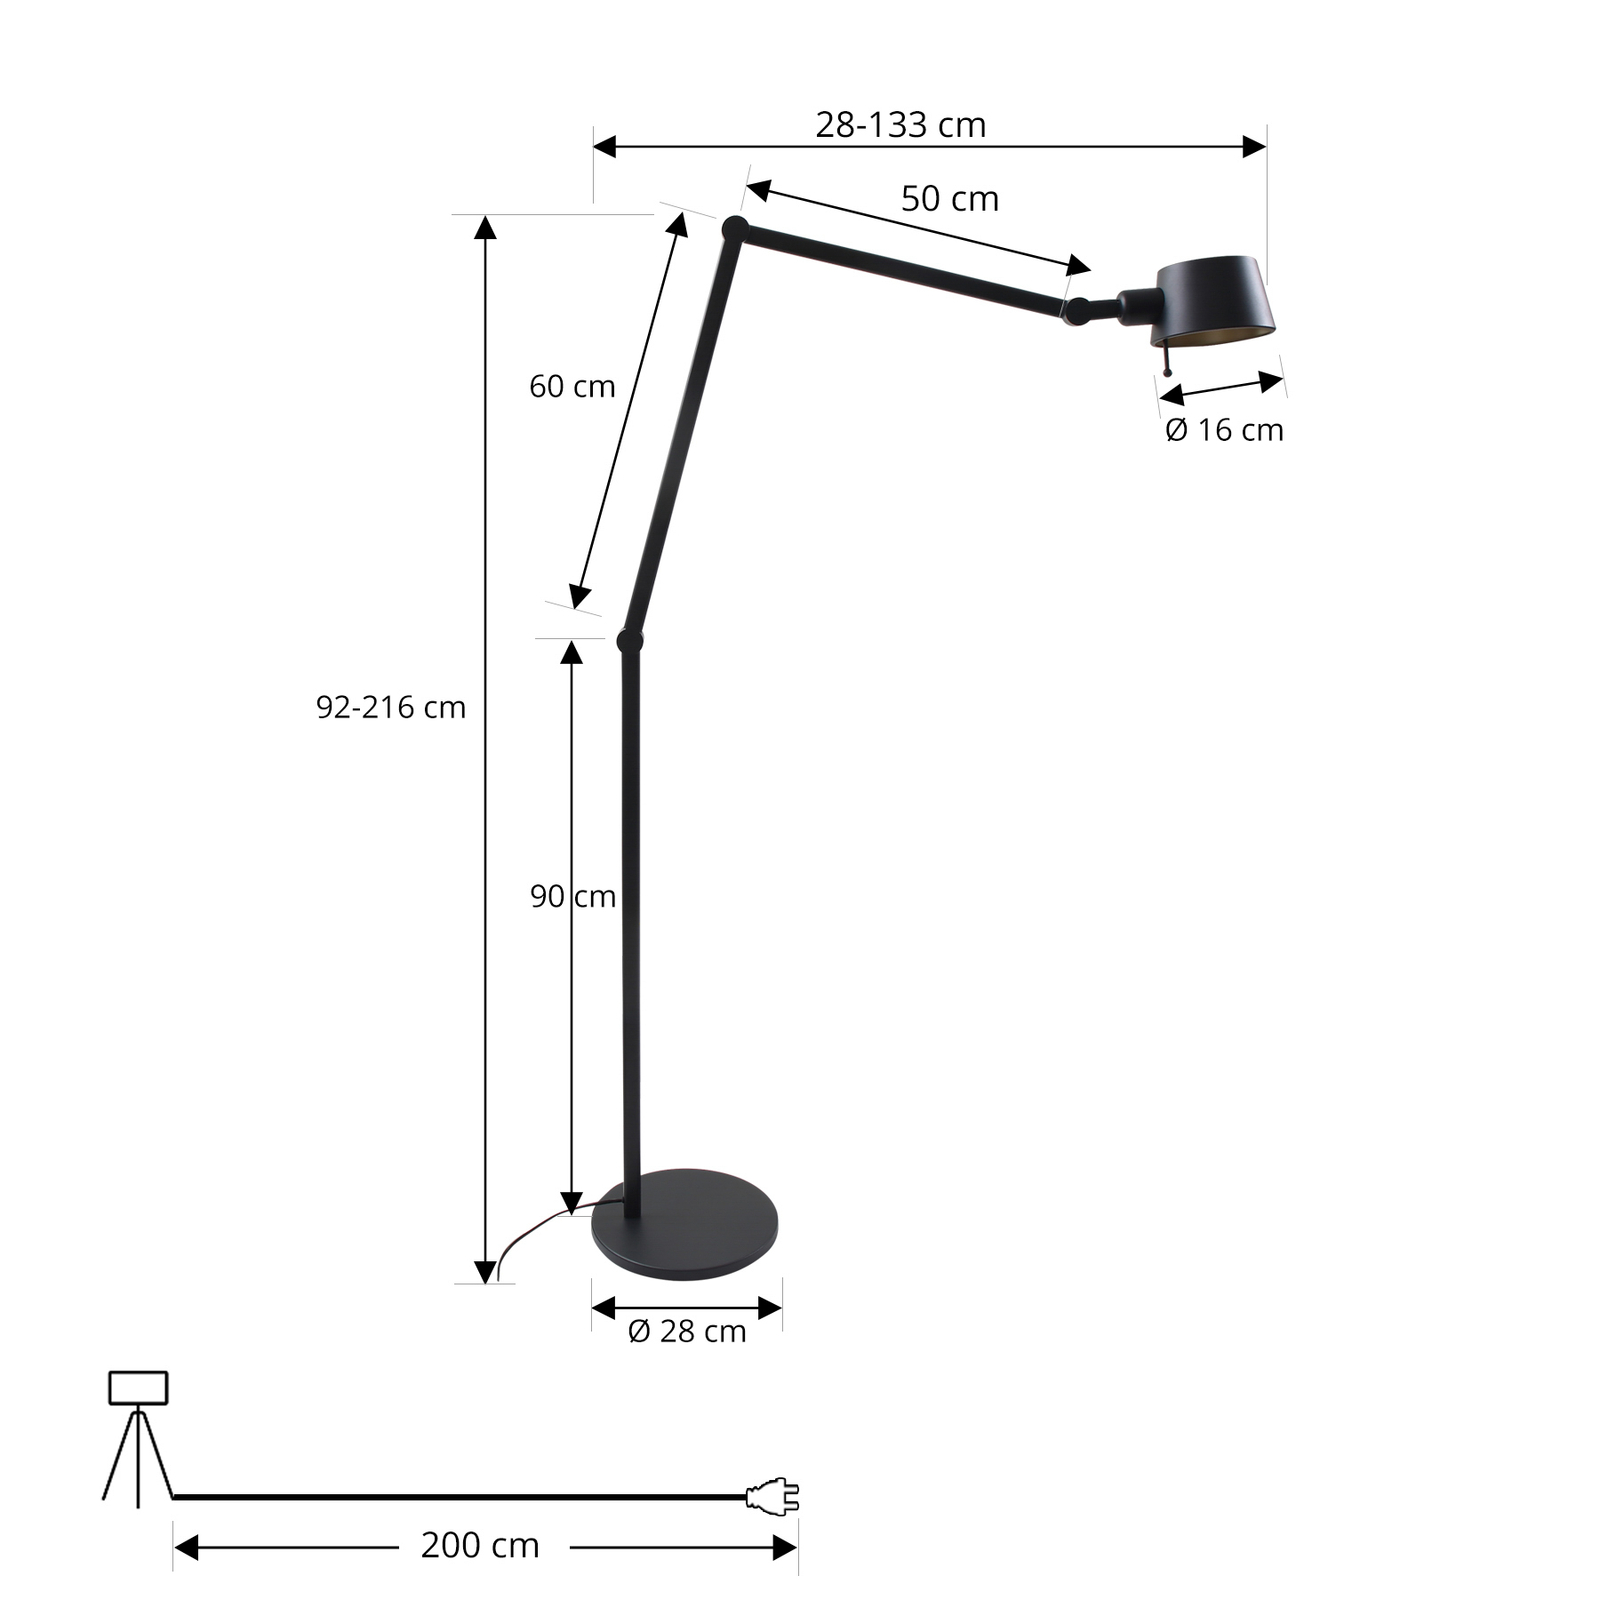 Lucande Silka floor lamp, height 216 cm, black, metal